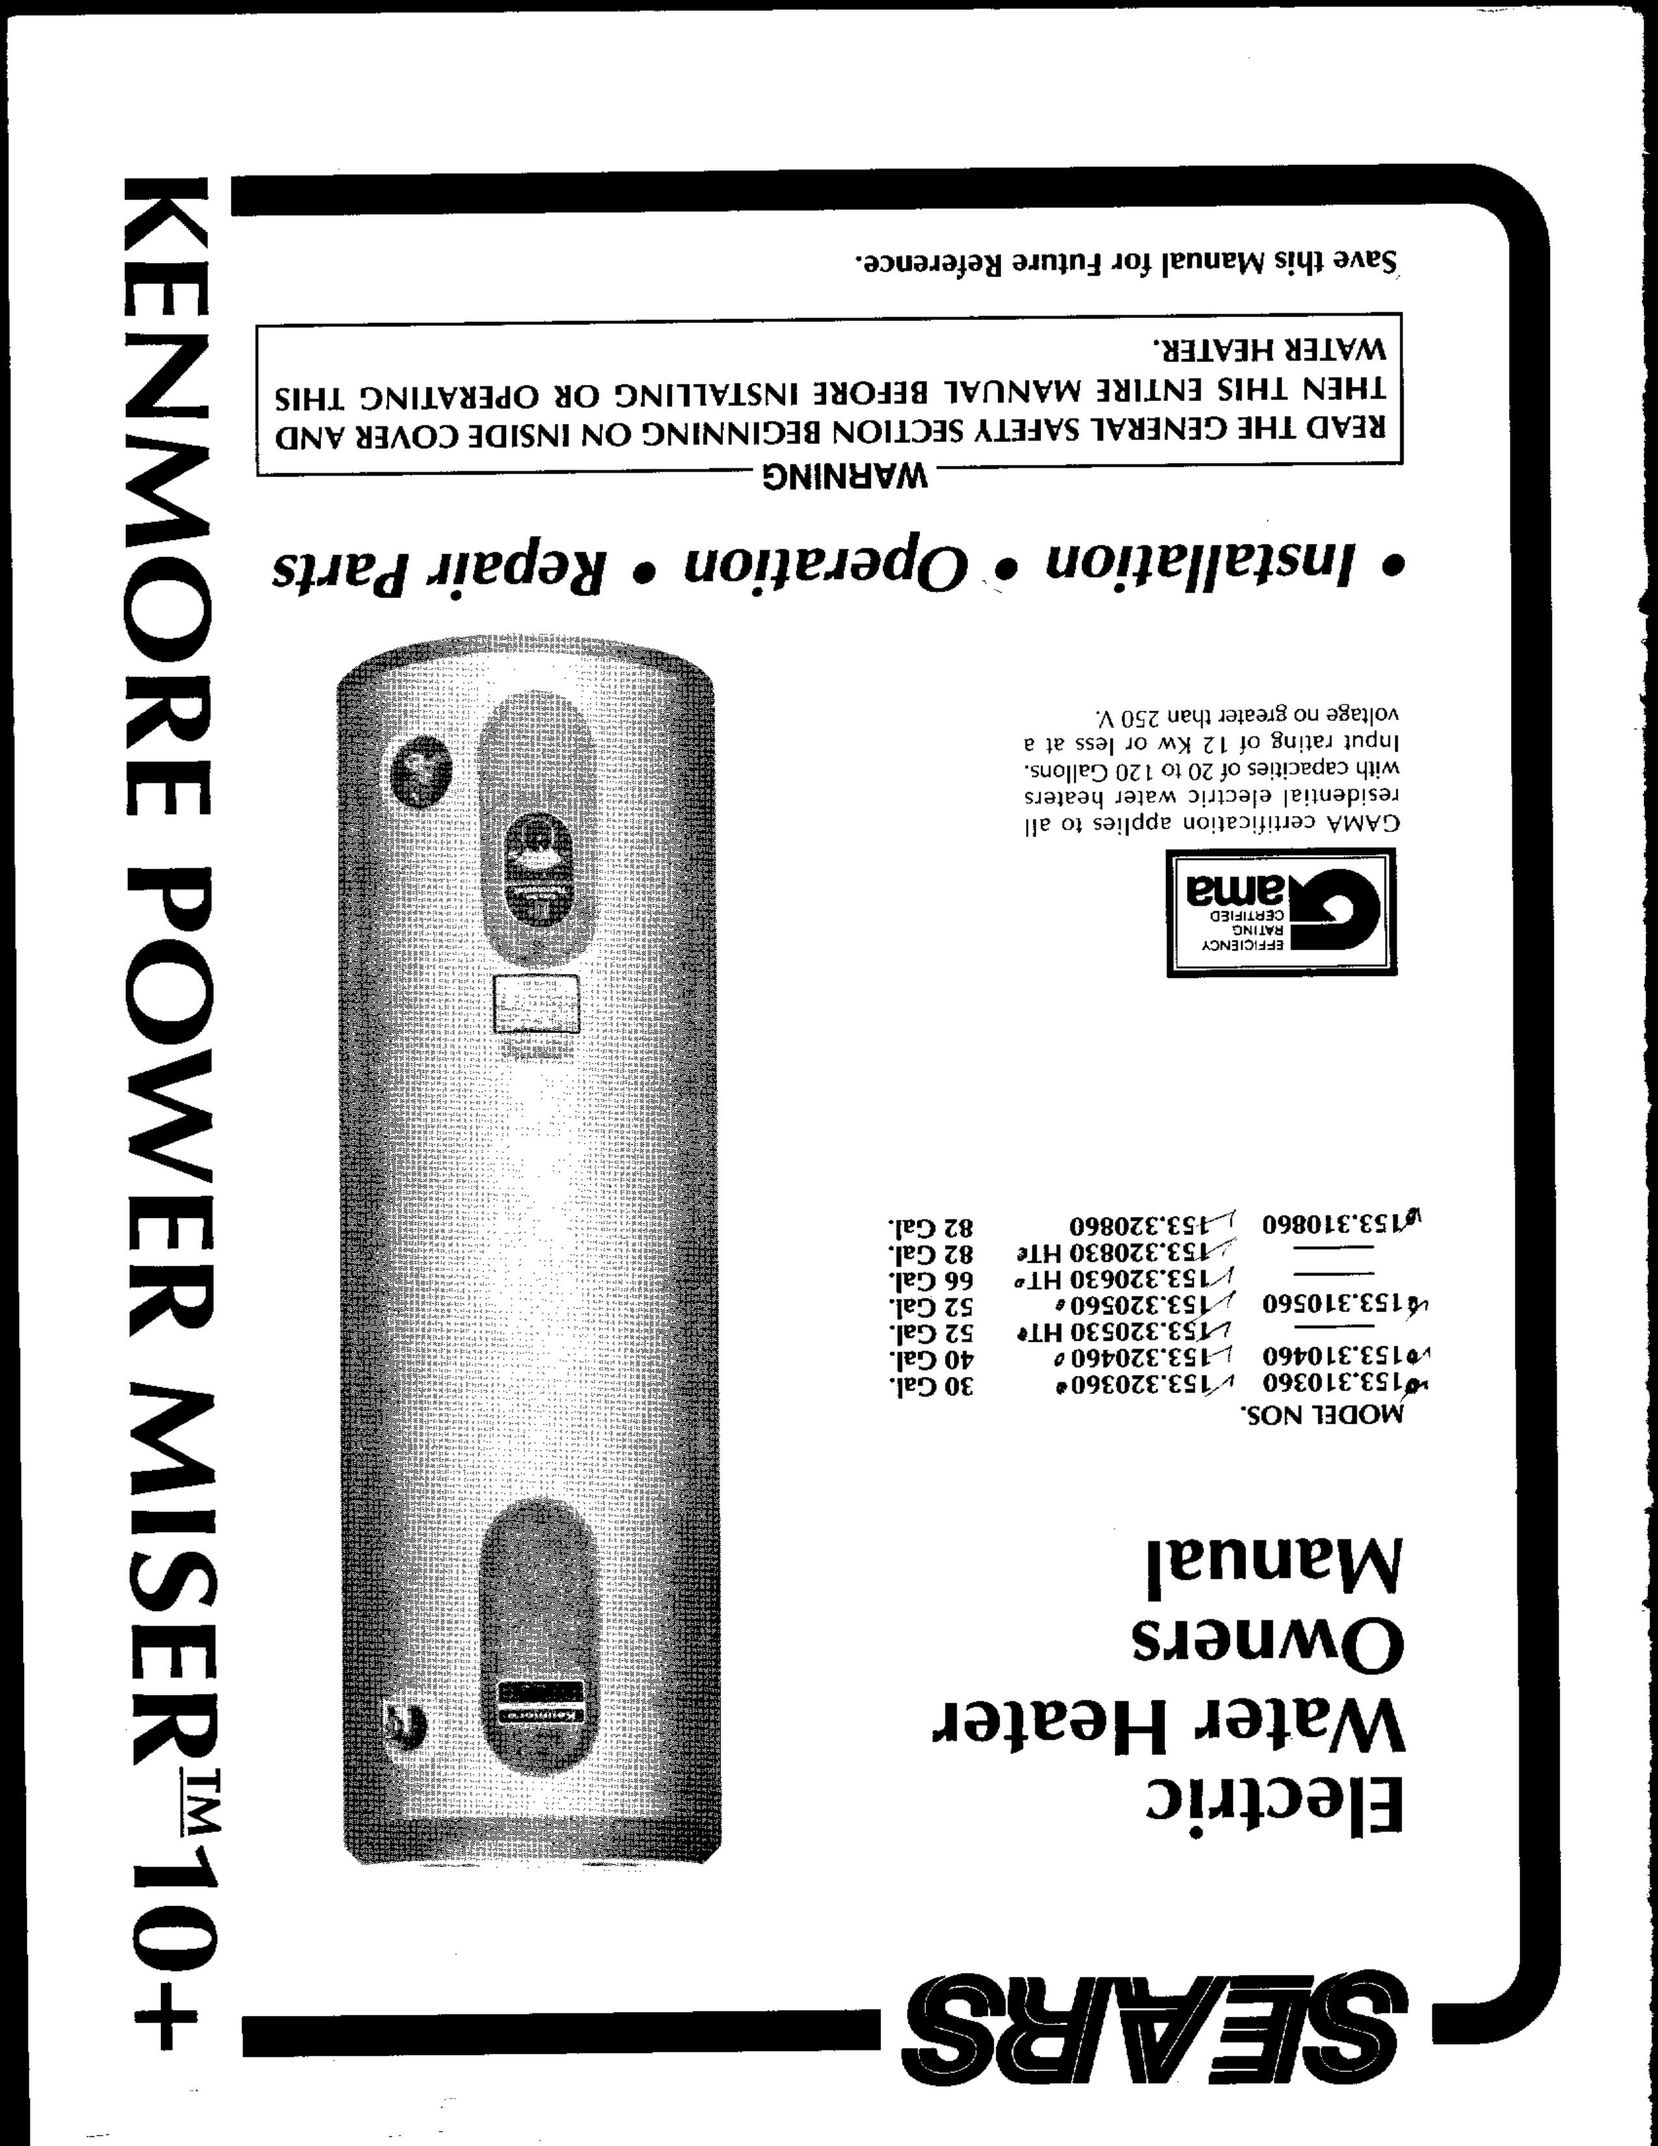 Sears 153.31086 Water Heater User Manual